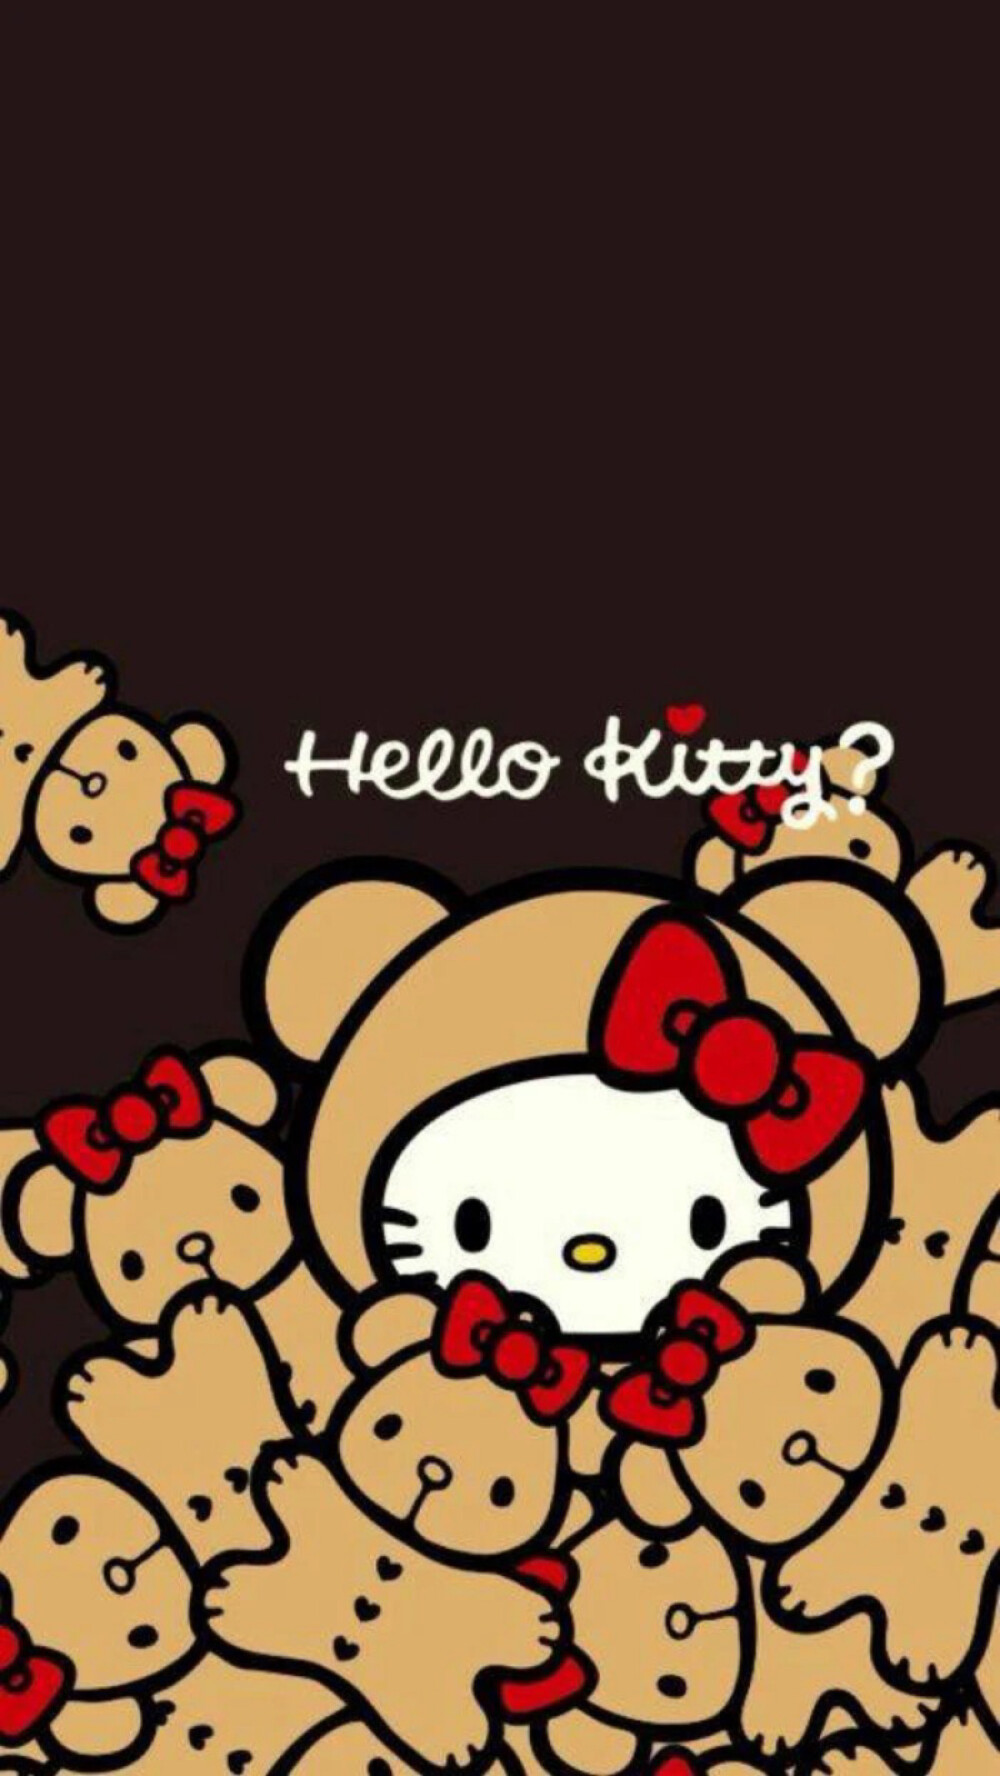 三丽鸥-hello kitty-锁屏壁纸 朋友圈背景